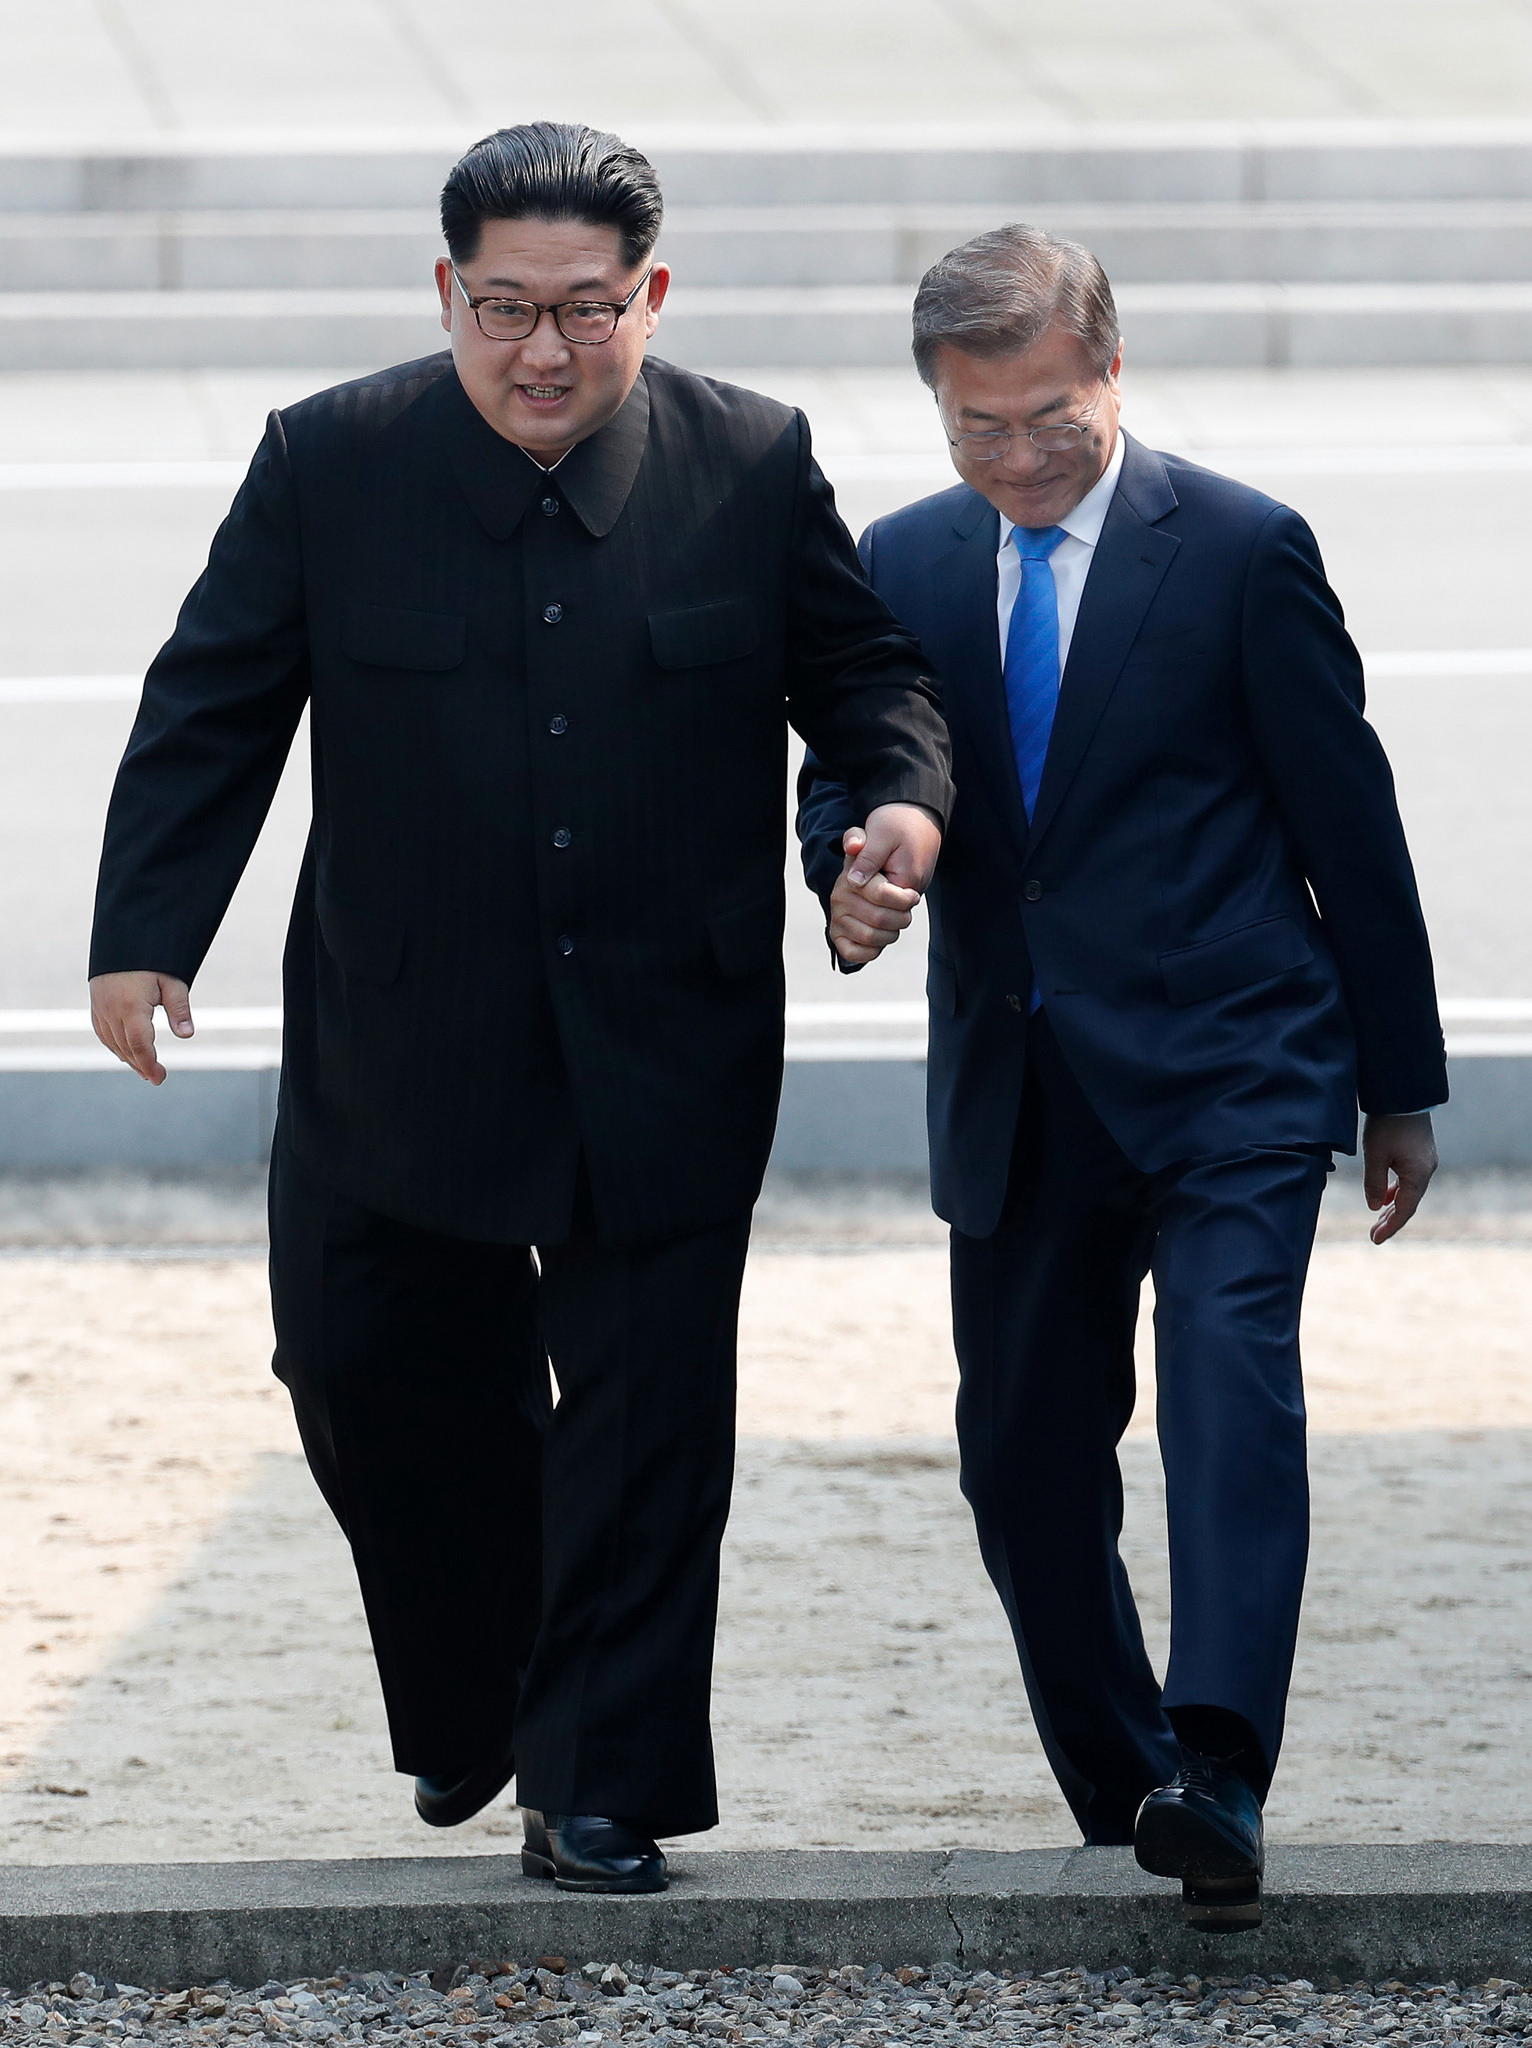 Корея делает исторический шаг к миру